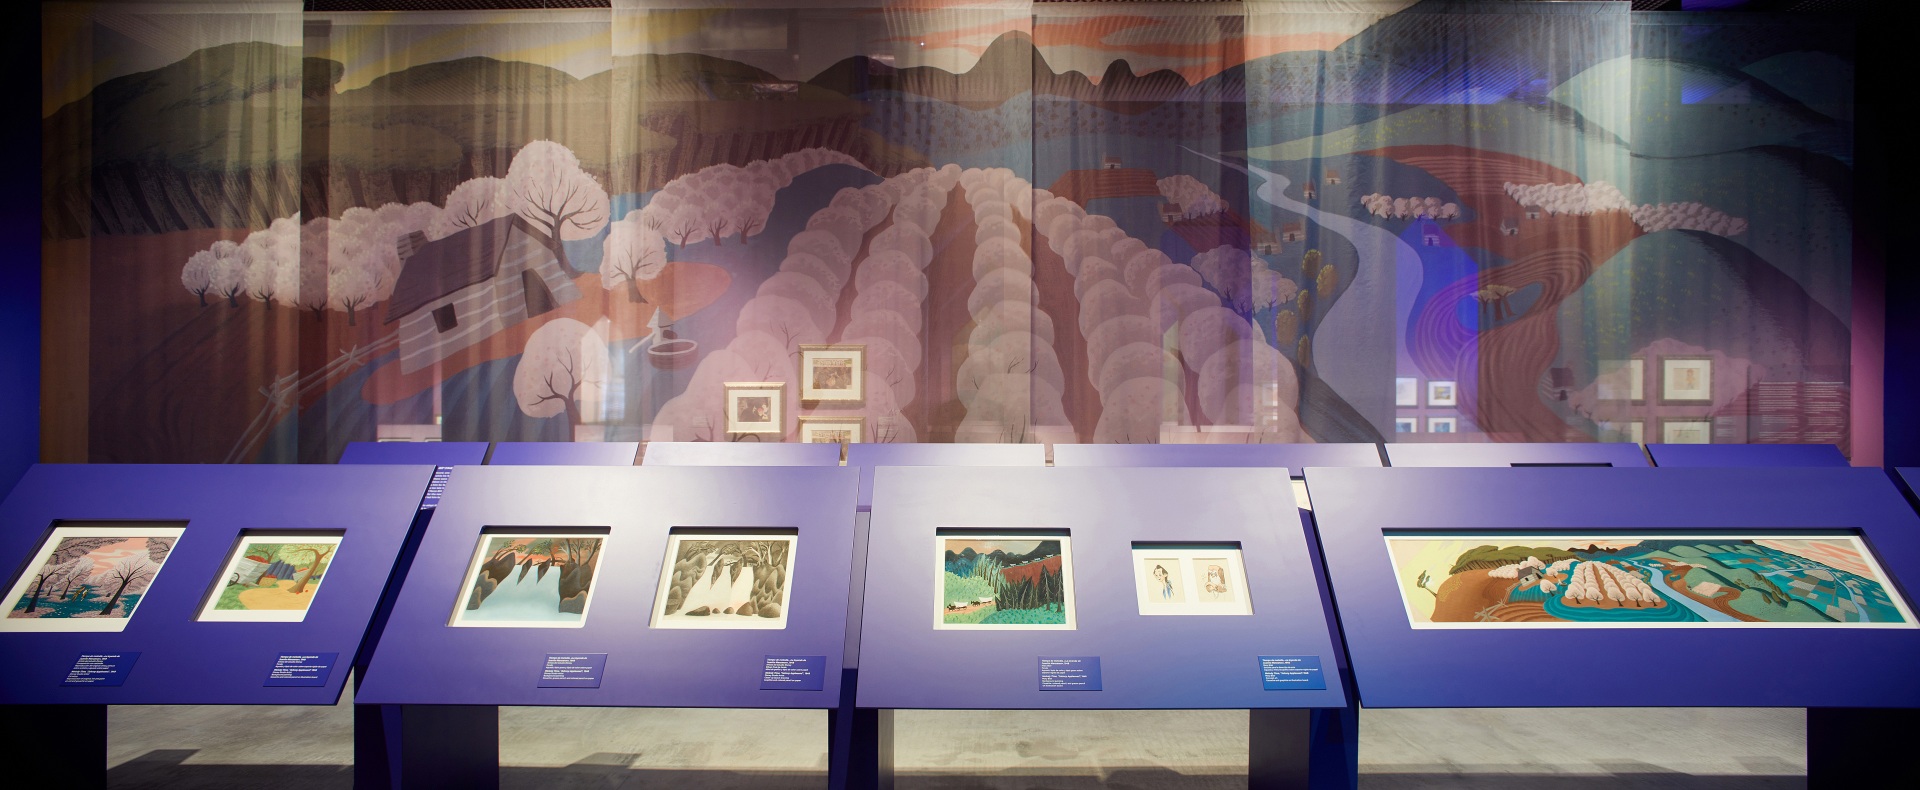 Exposición sobre Walt Disney. Mesas de dibujo color morado. Paisaje de colores de fondo.  